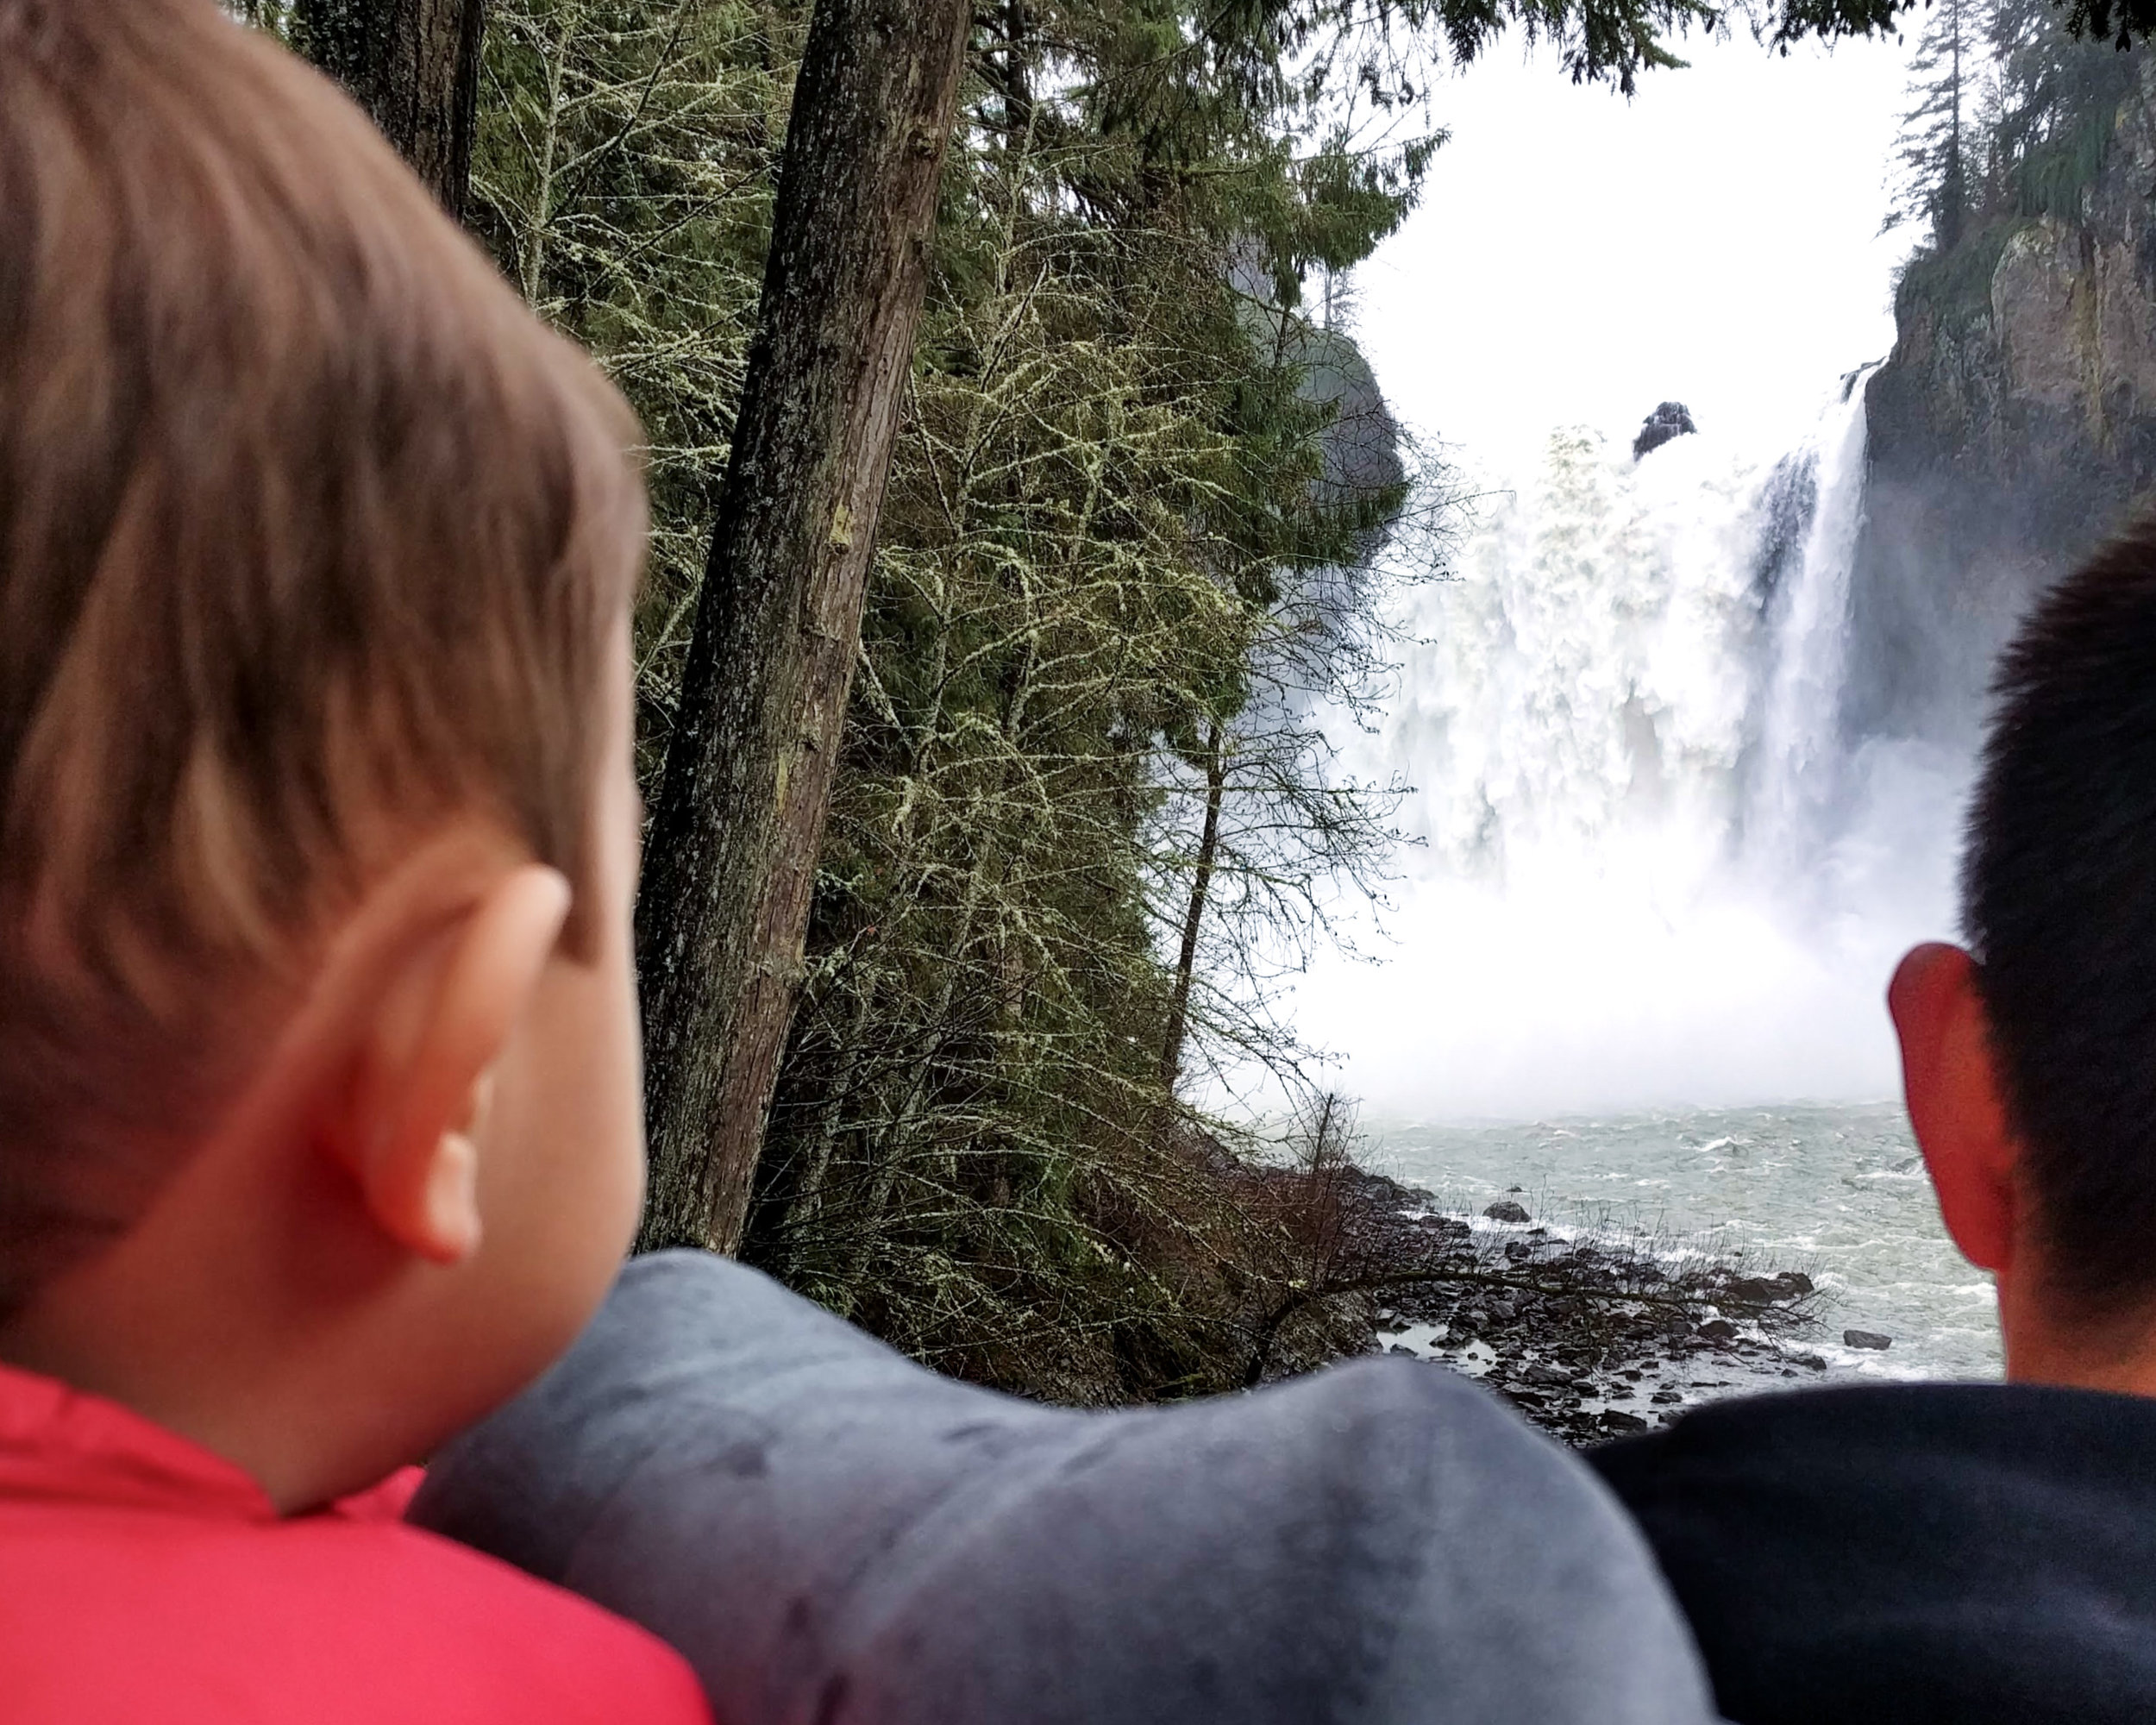  Elden mesmerized by the falls 